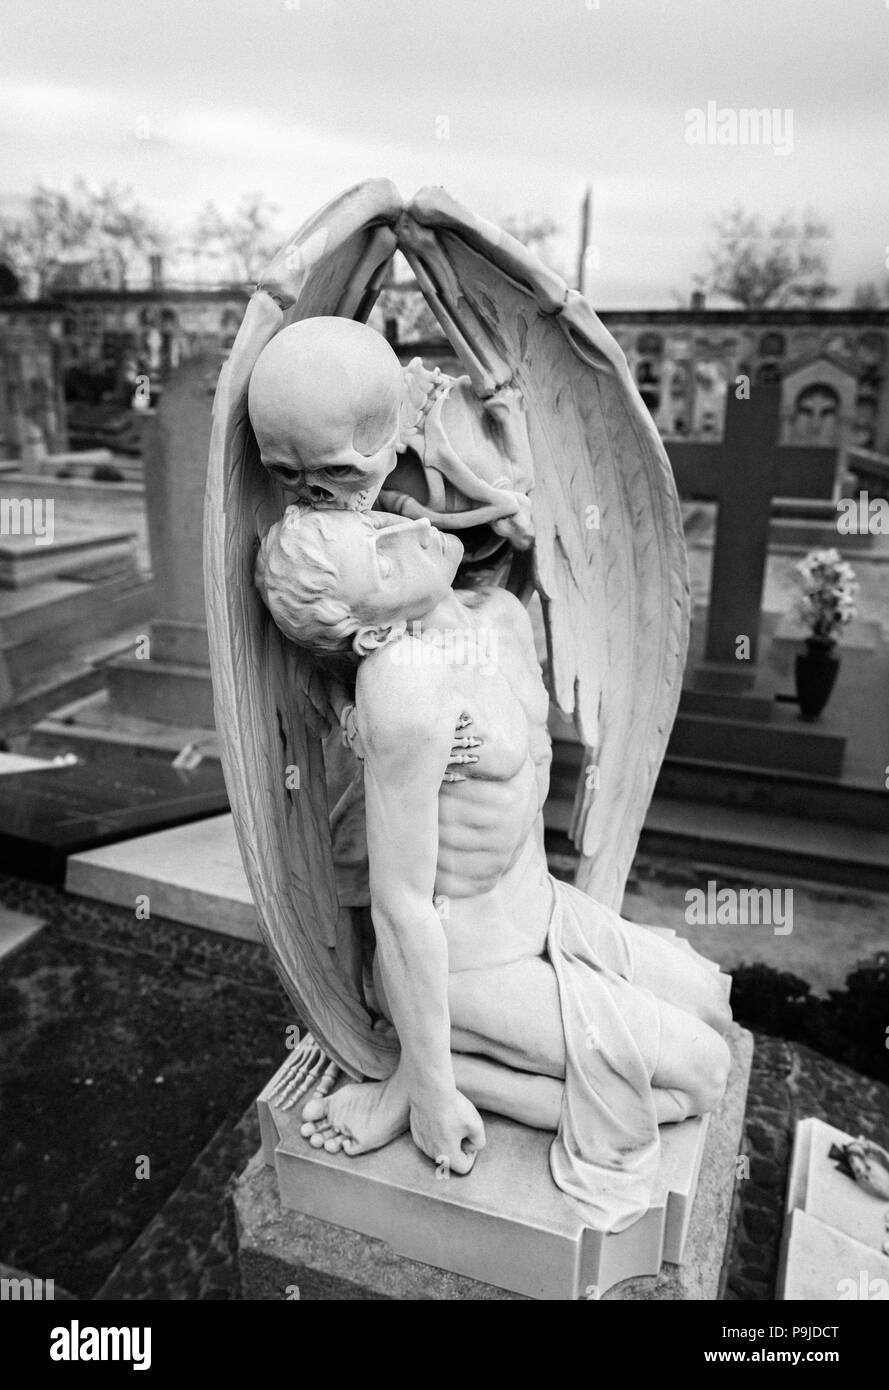 Cimitero gotico statua della depressione & morte a Poble Nou cimitero, Barcelona, Spagna. La vita di aspirazione come diavolo Dementor, jinn o ghoul Foto Stock